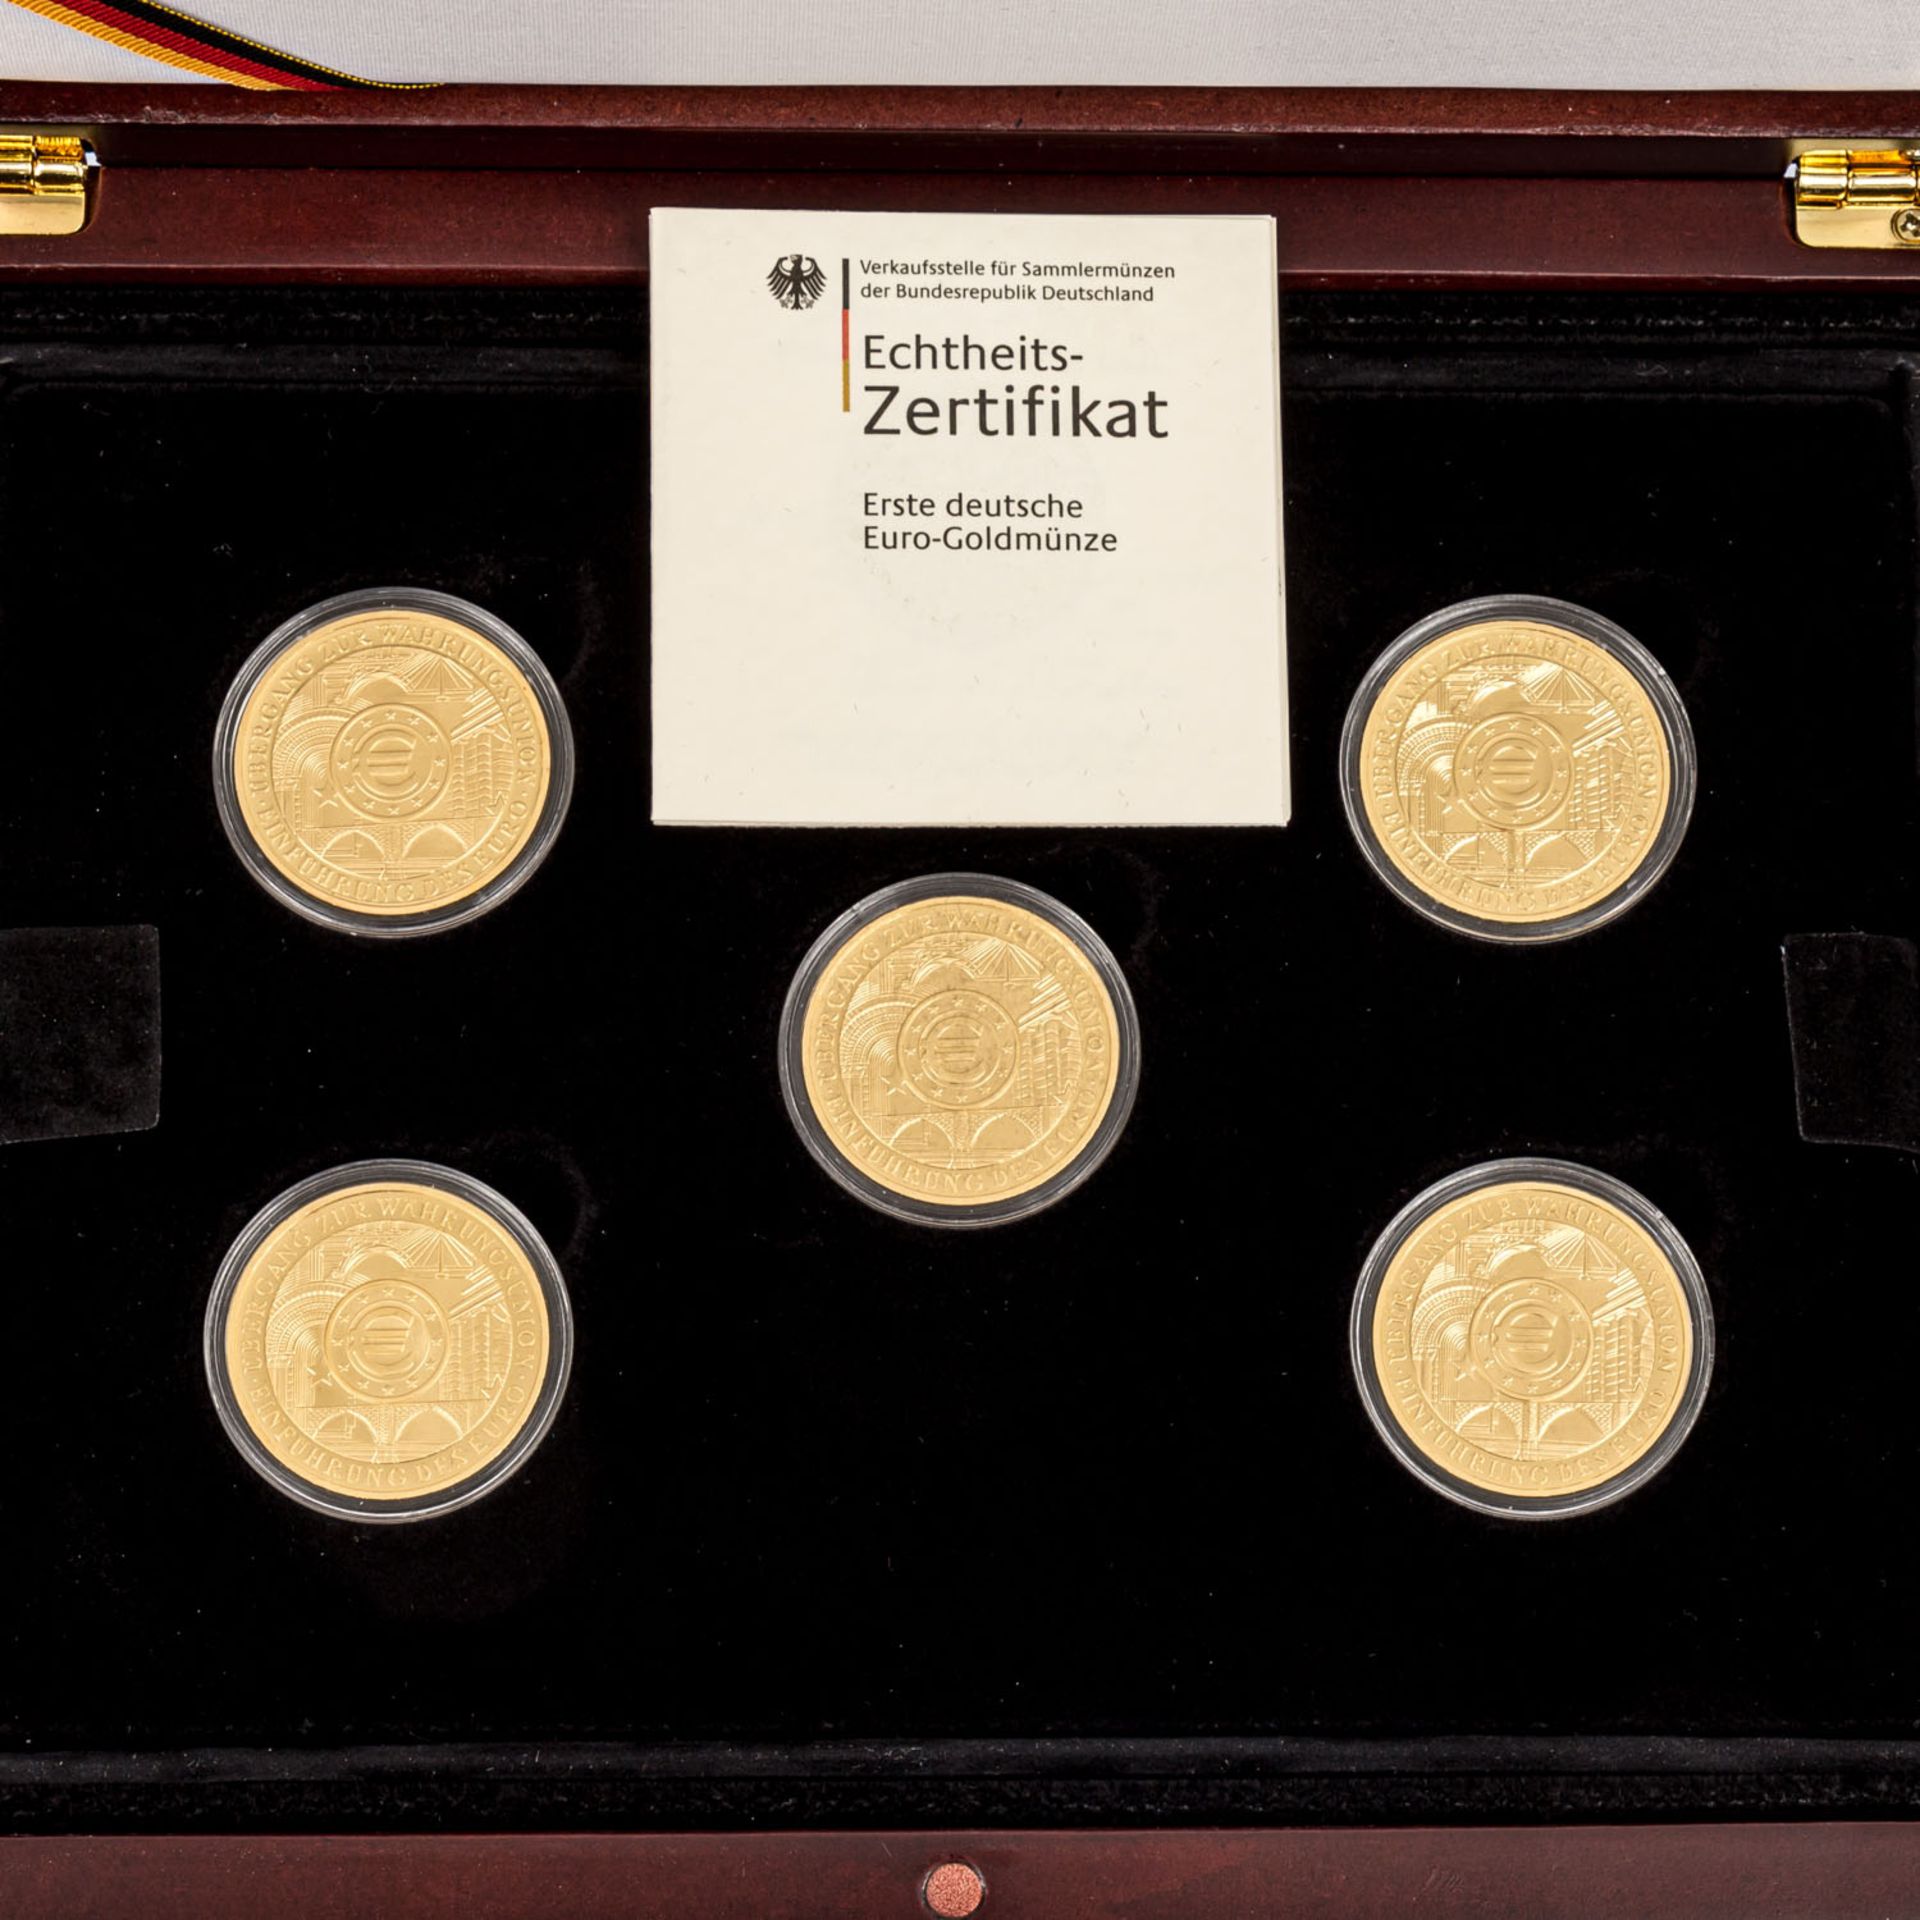 BRD-GOLD-Set "Die offiziellen Gold-Euros der Bundesrepublik Deutschland" - - Image 2 of 3